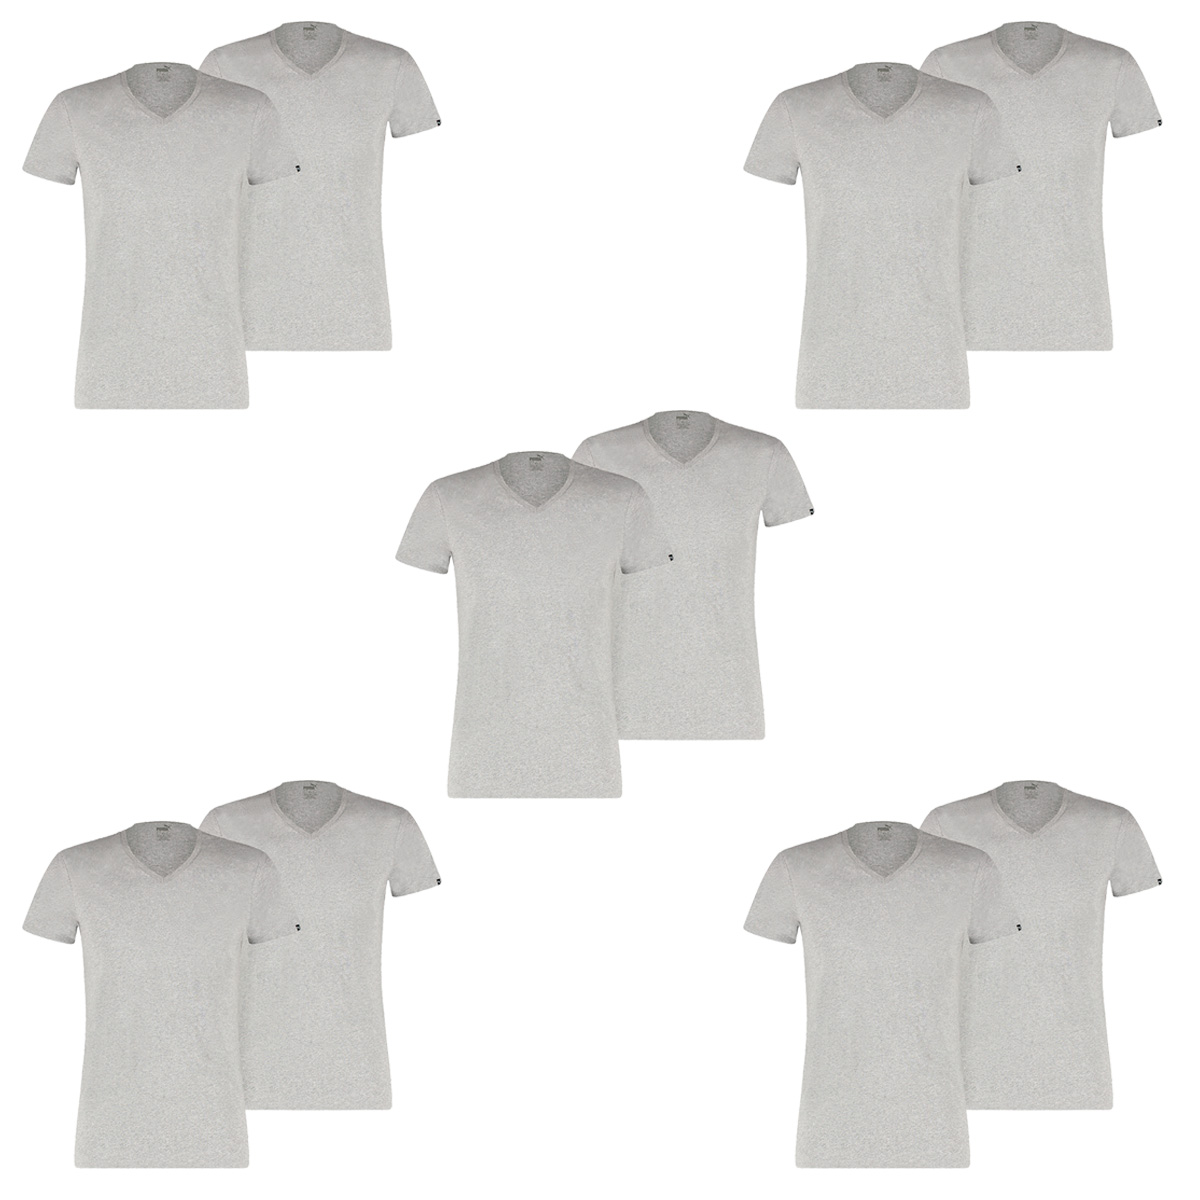 10 er Pack Puma Basic V Neck T-Shirt Men Herren Unterhemd V-Ausschnitt